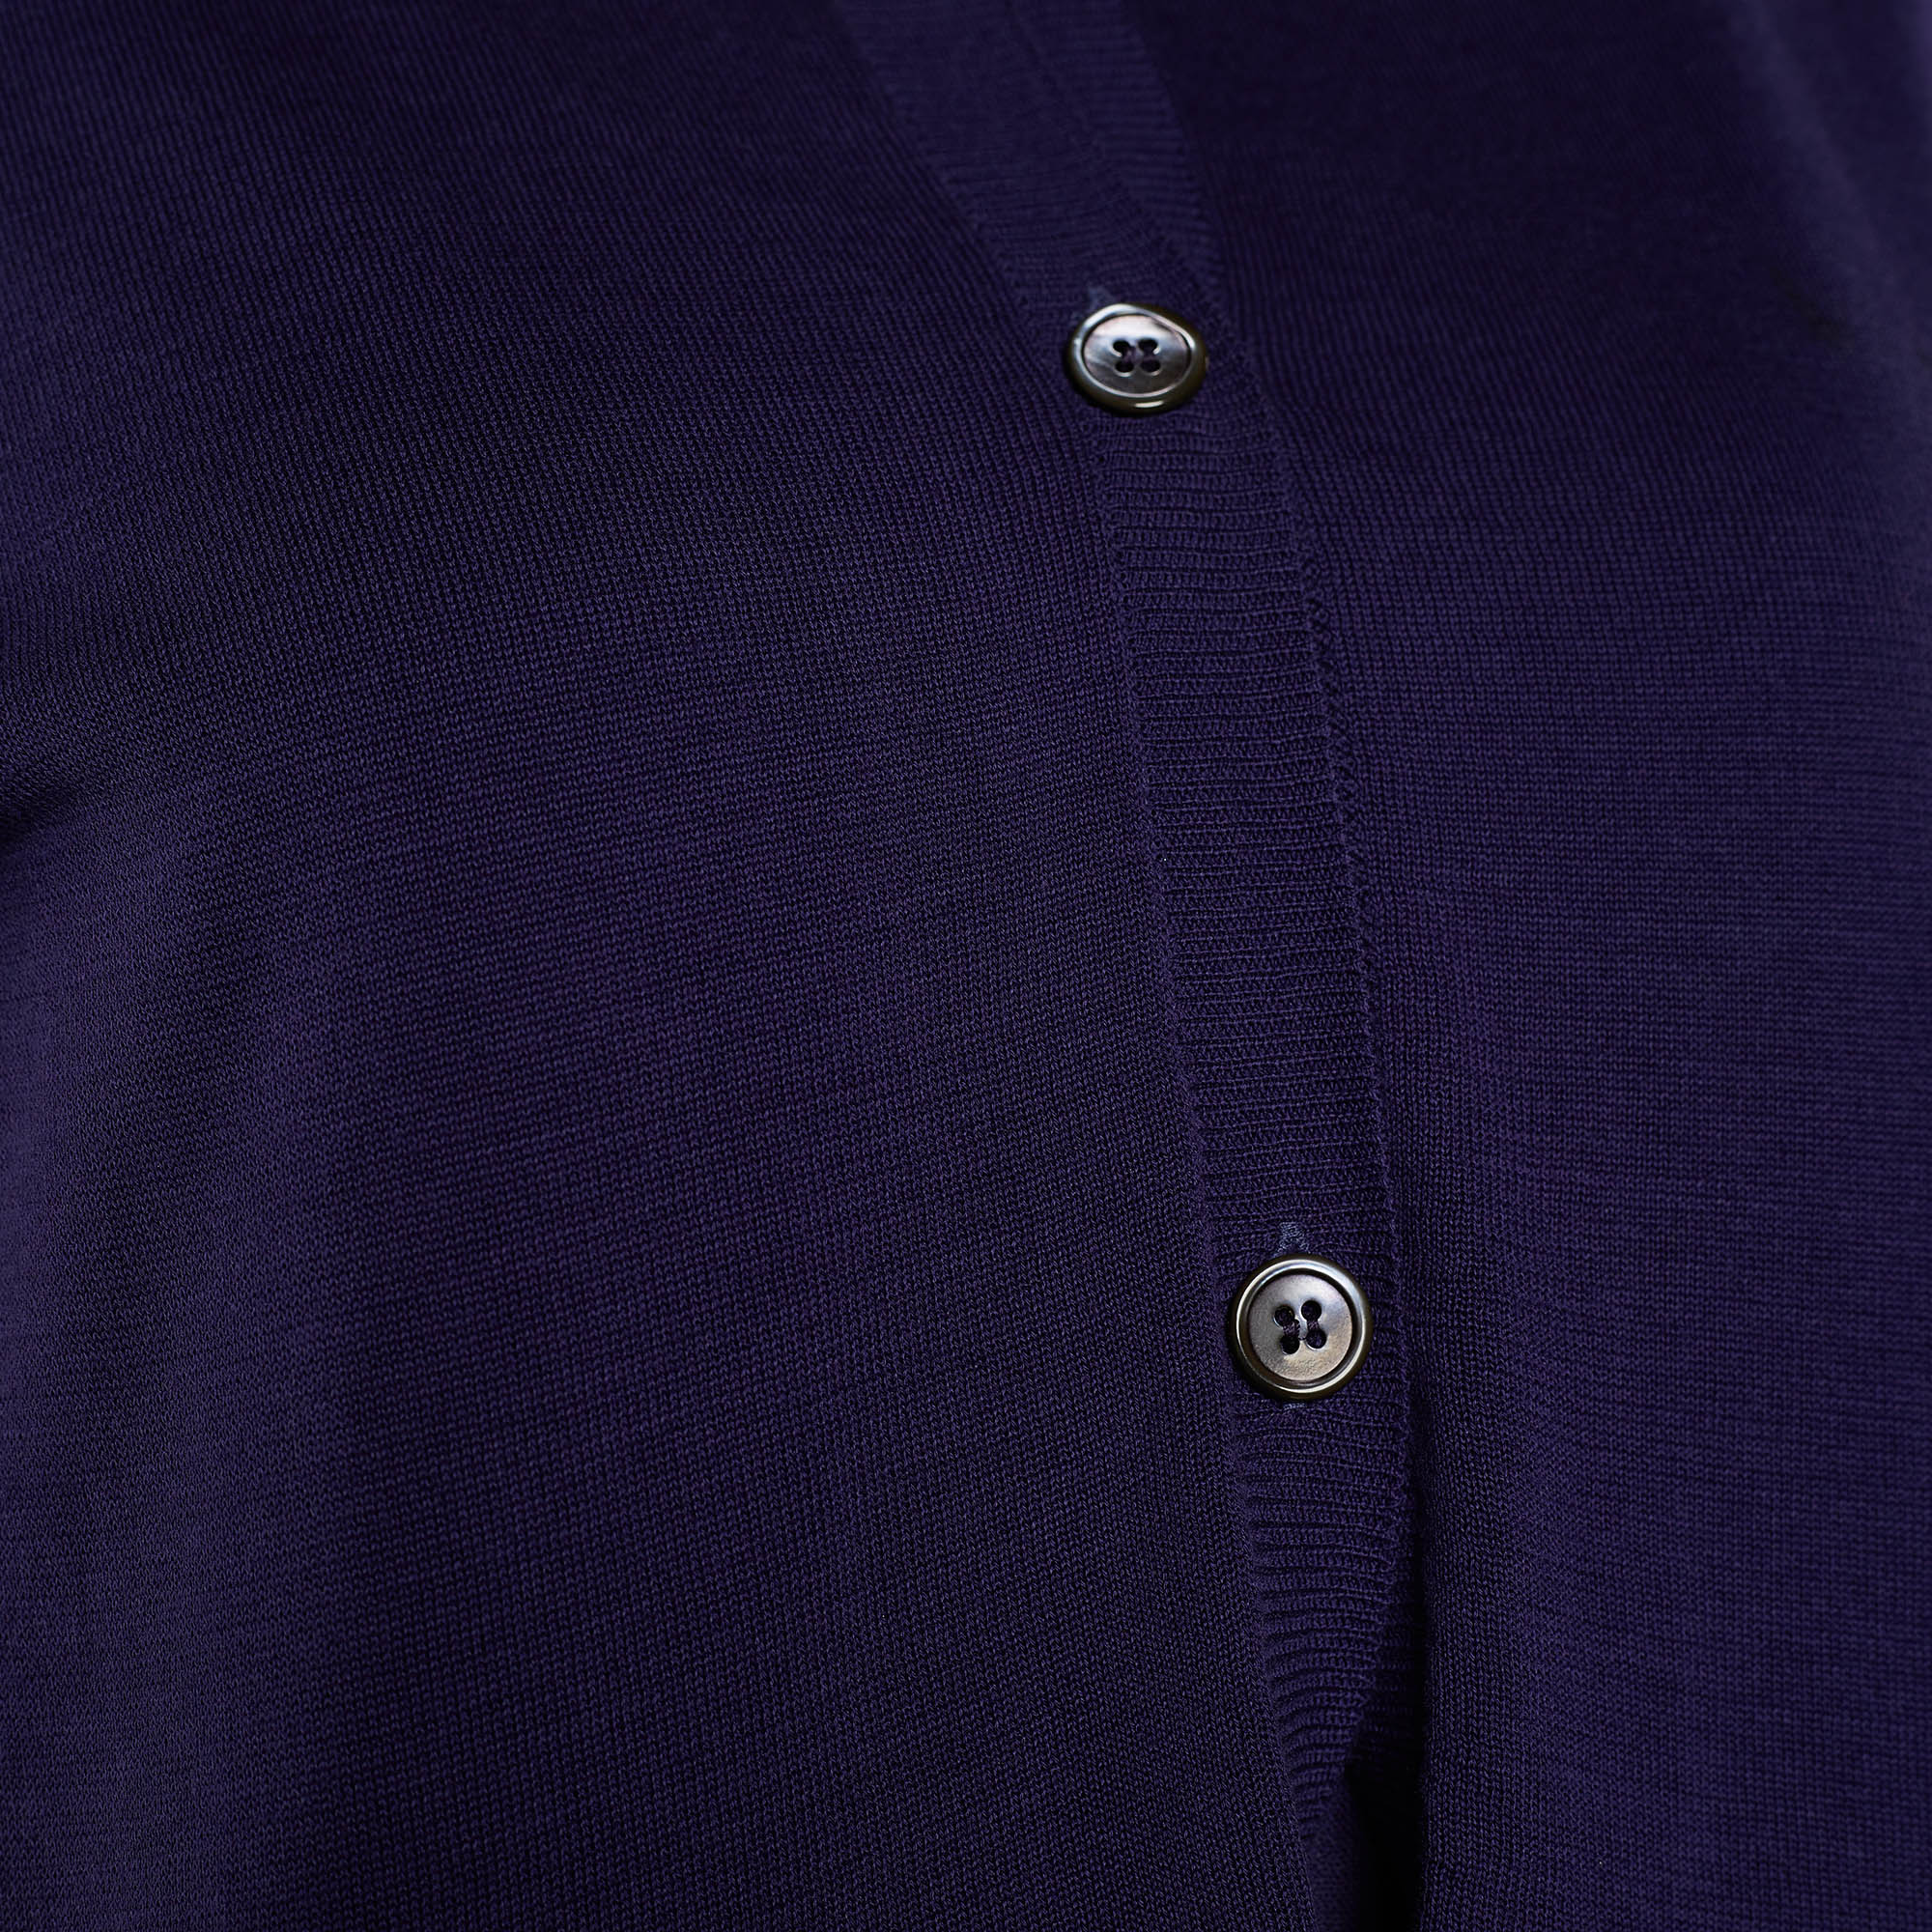 Marni Purple Cotton Knit Button Front Top L